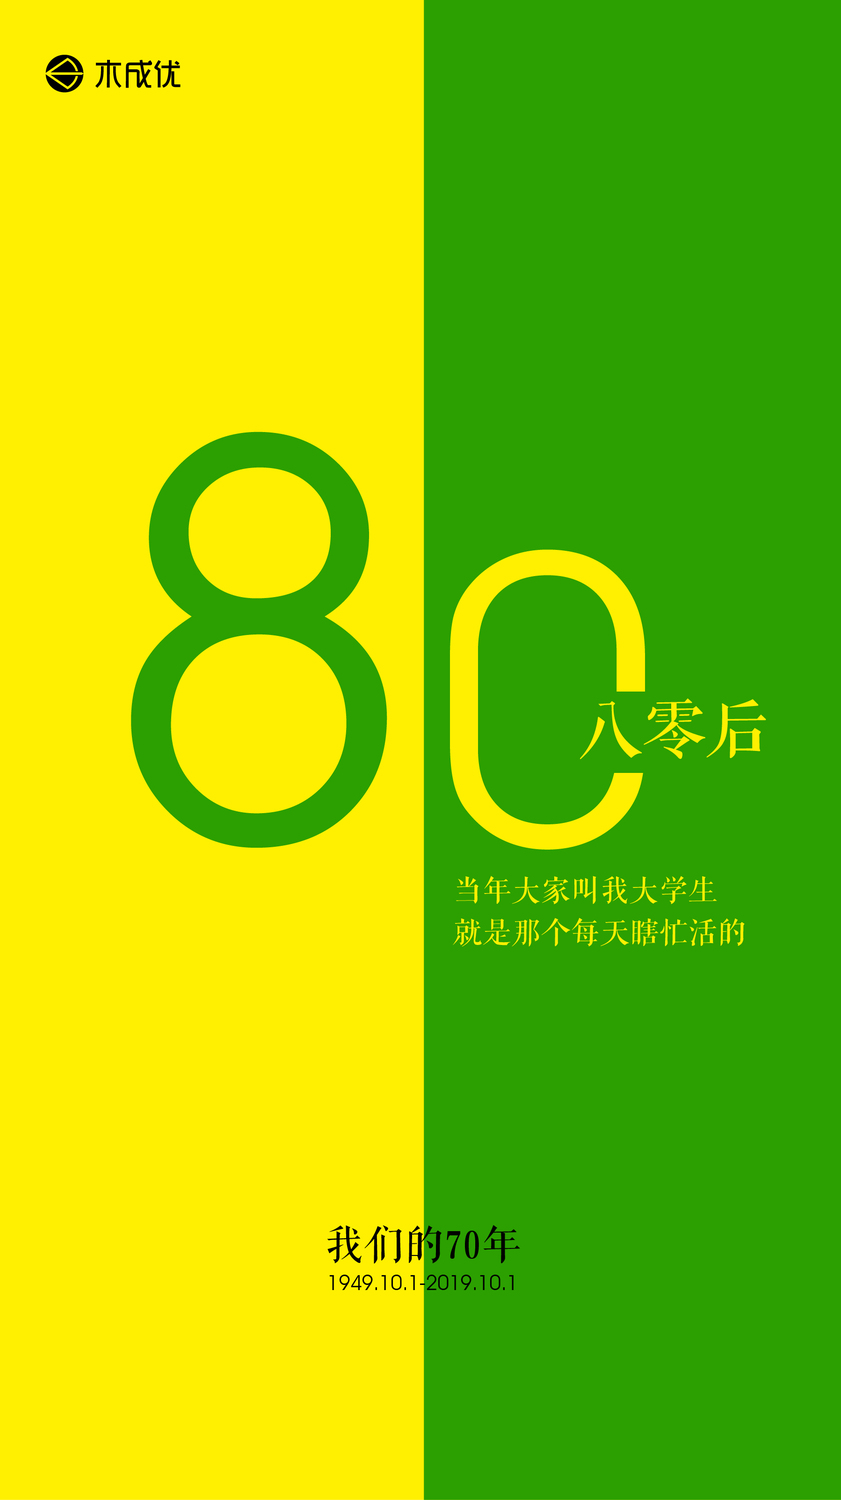 海报国庆对称-09.jpg